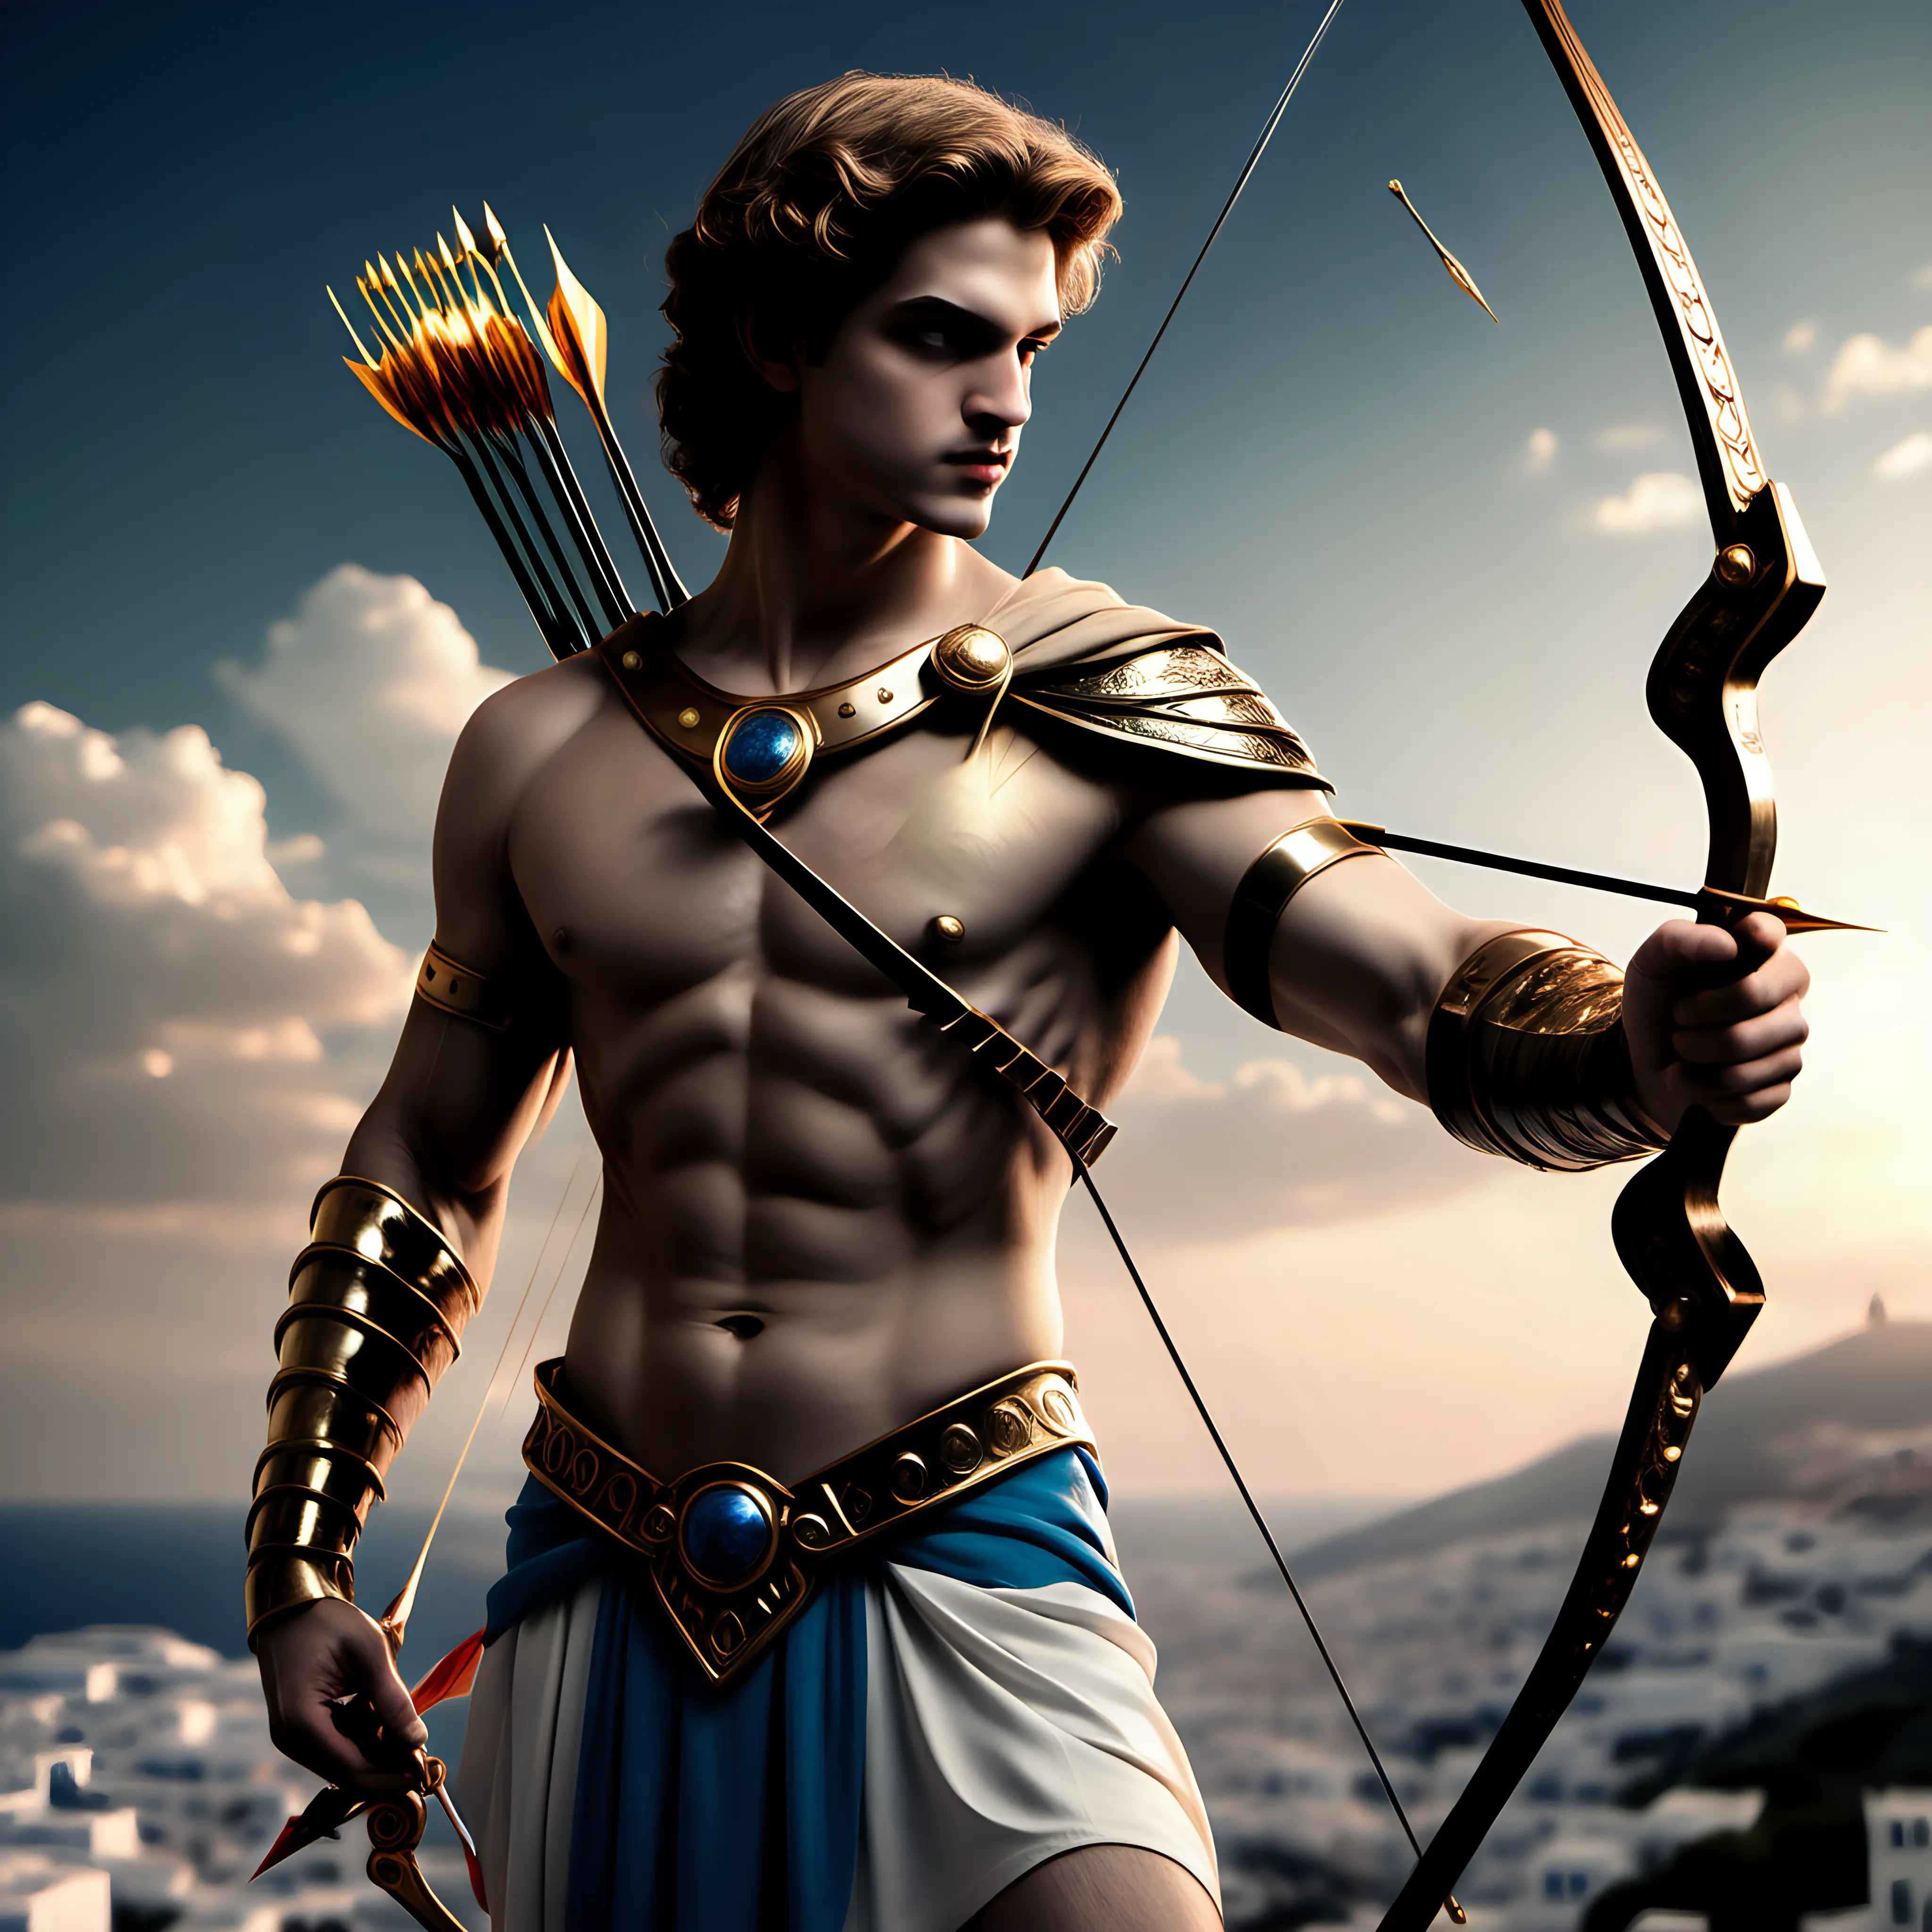 principe Paris de  la mistologia griega con su arco y flechas
